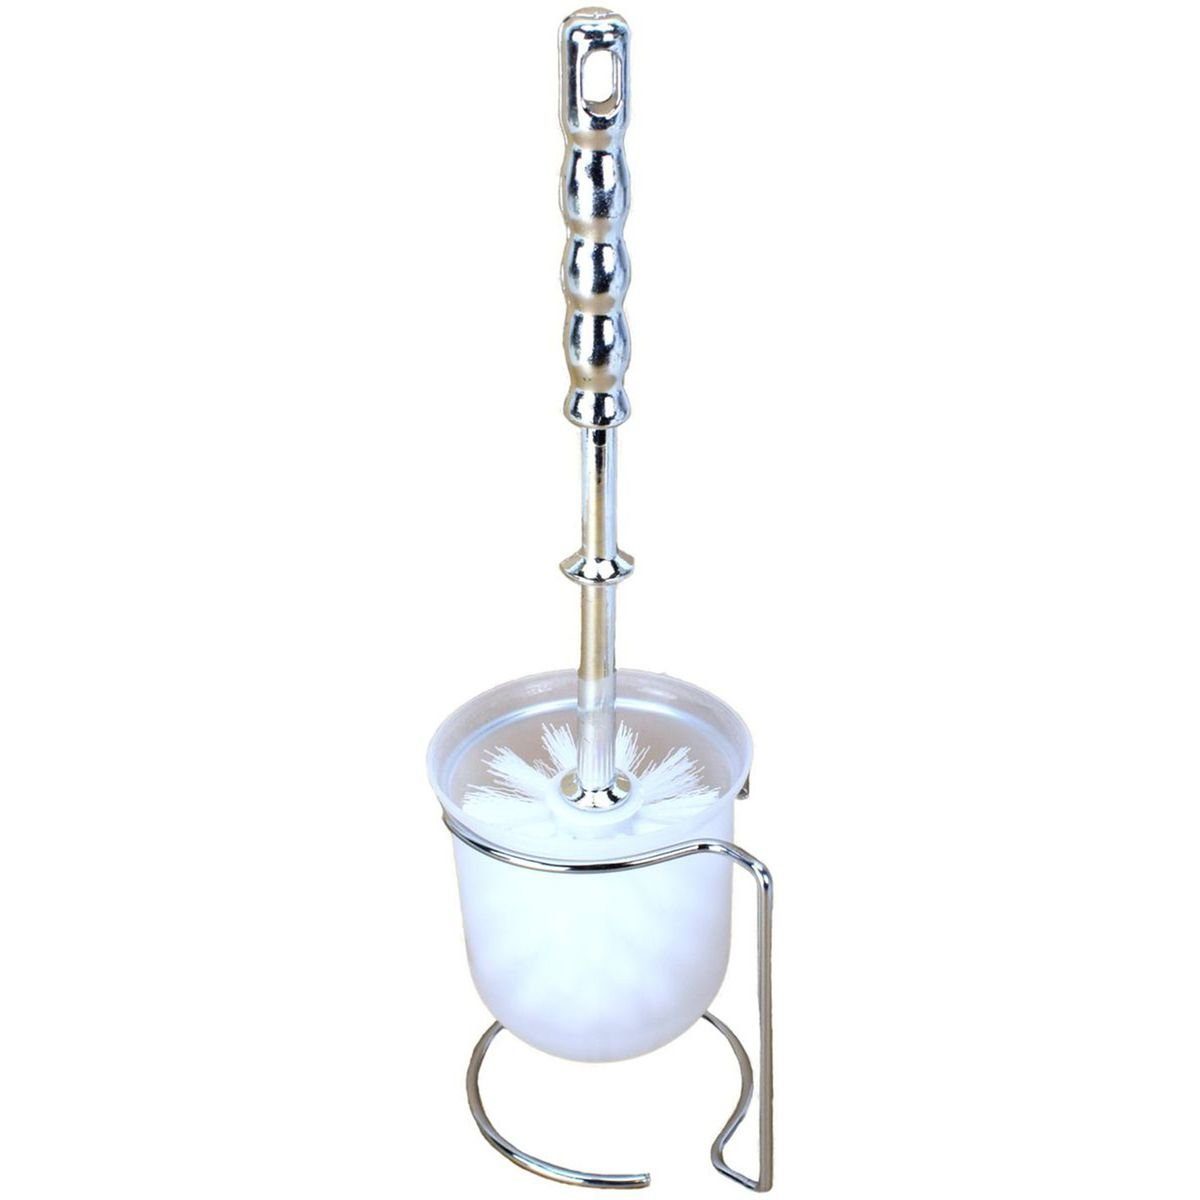 BENSON WC-Reinigungsbürste Bürstengarnitur Set WC-Bürsten Halterung ca.37cm verchromte Garnitur